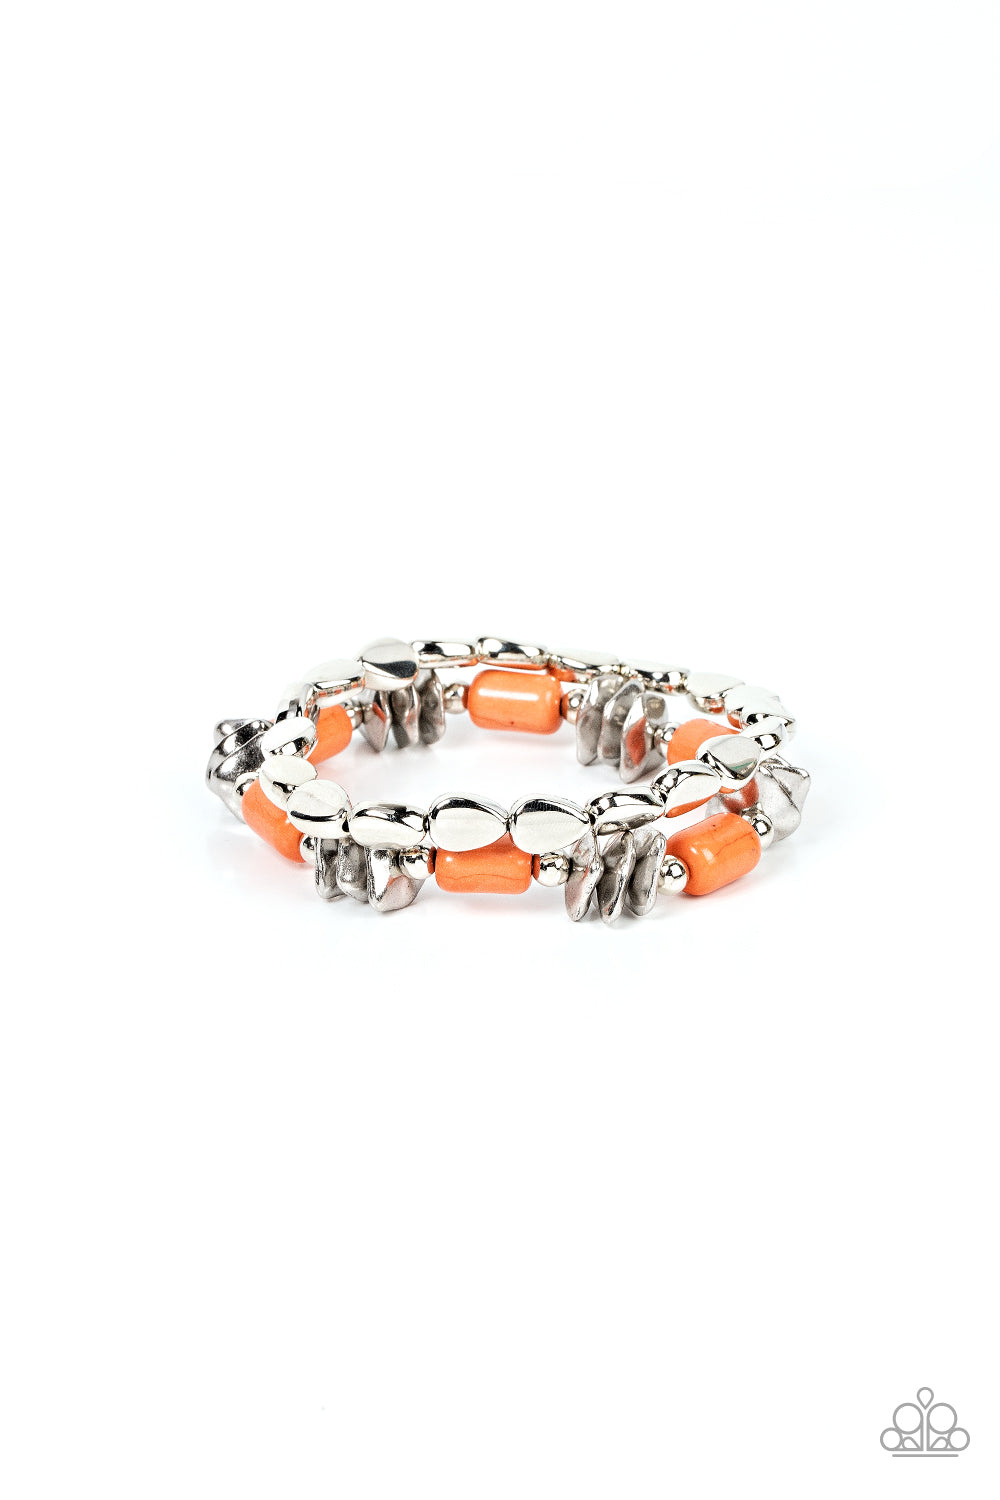 Canyon Cavern - orange - Paparazzi bracelet